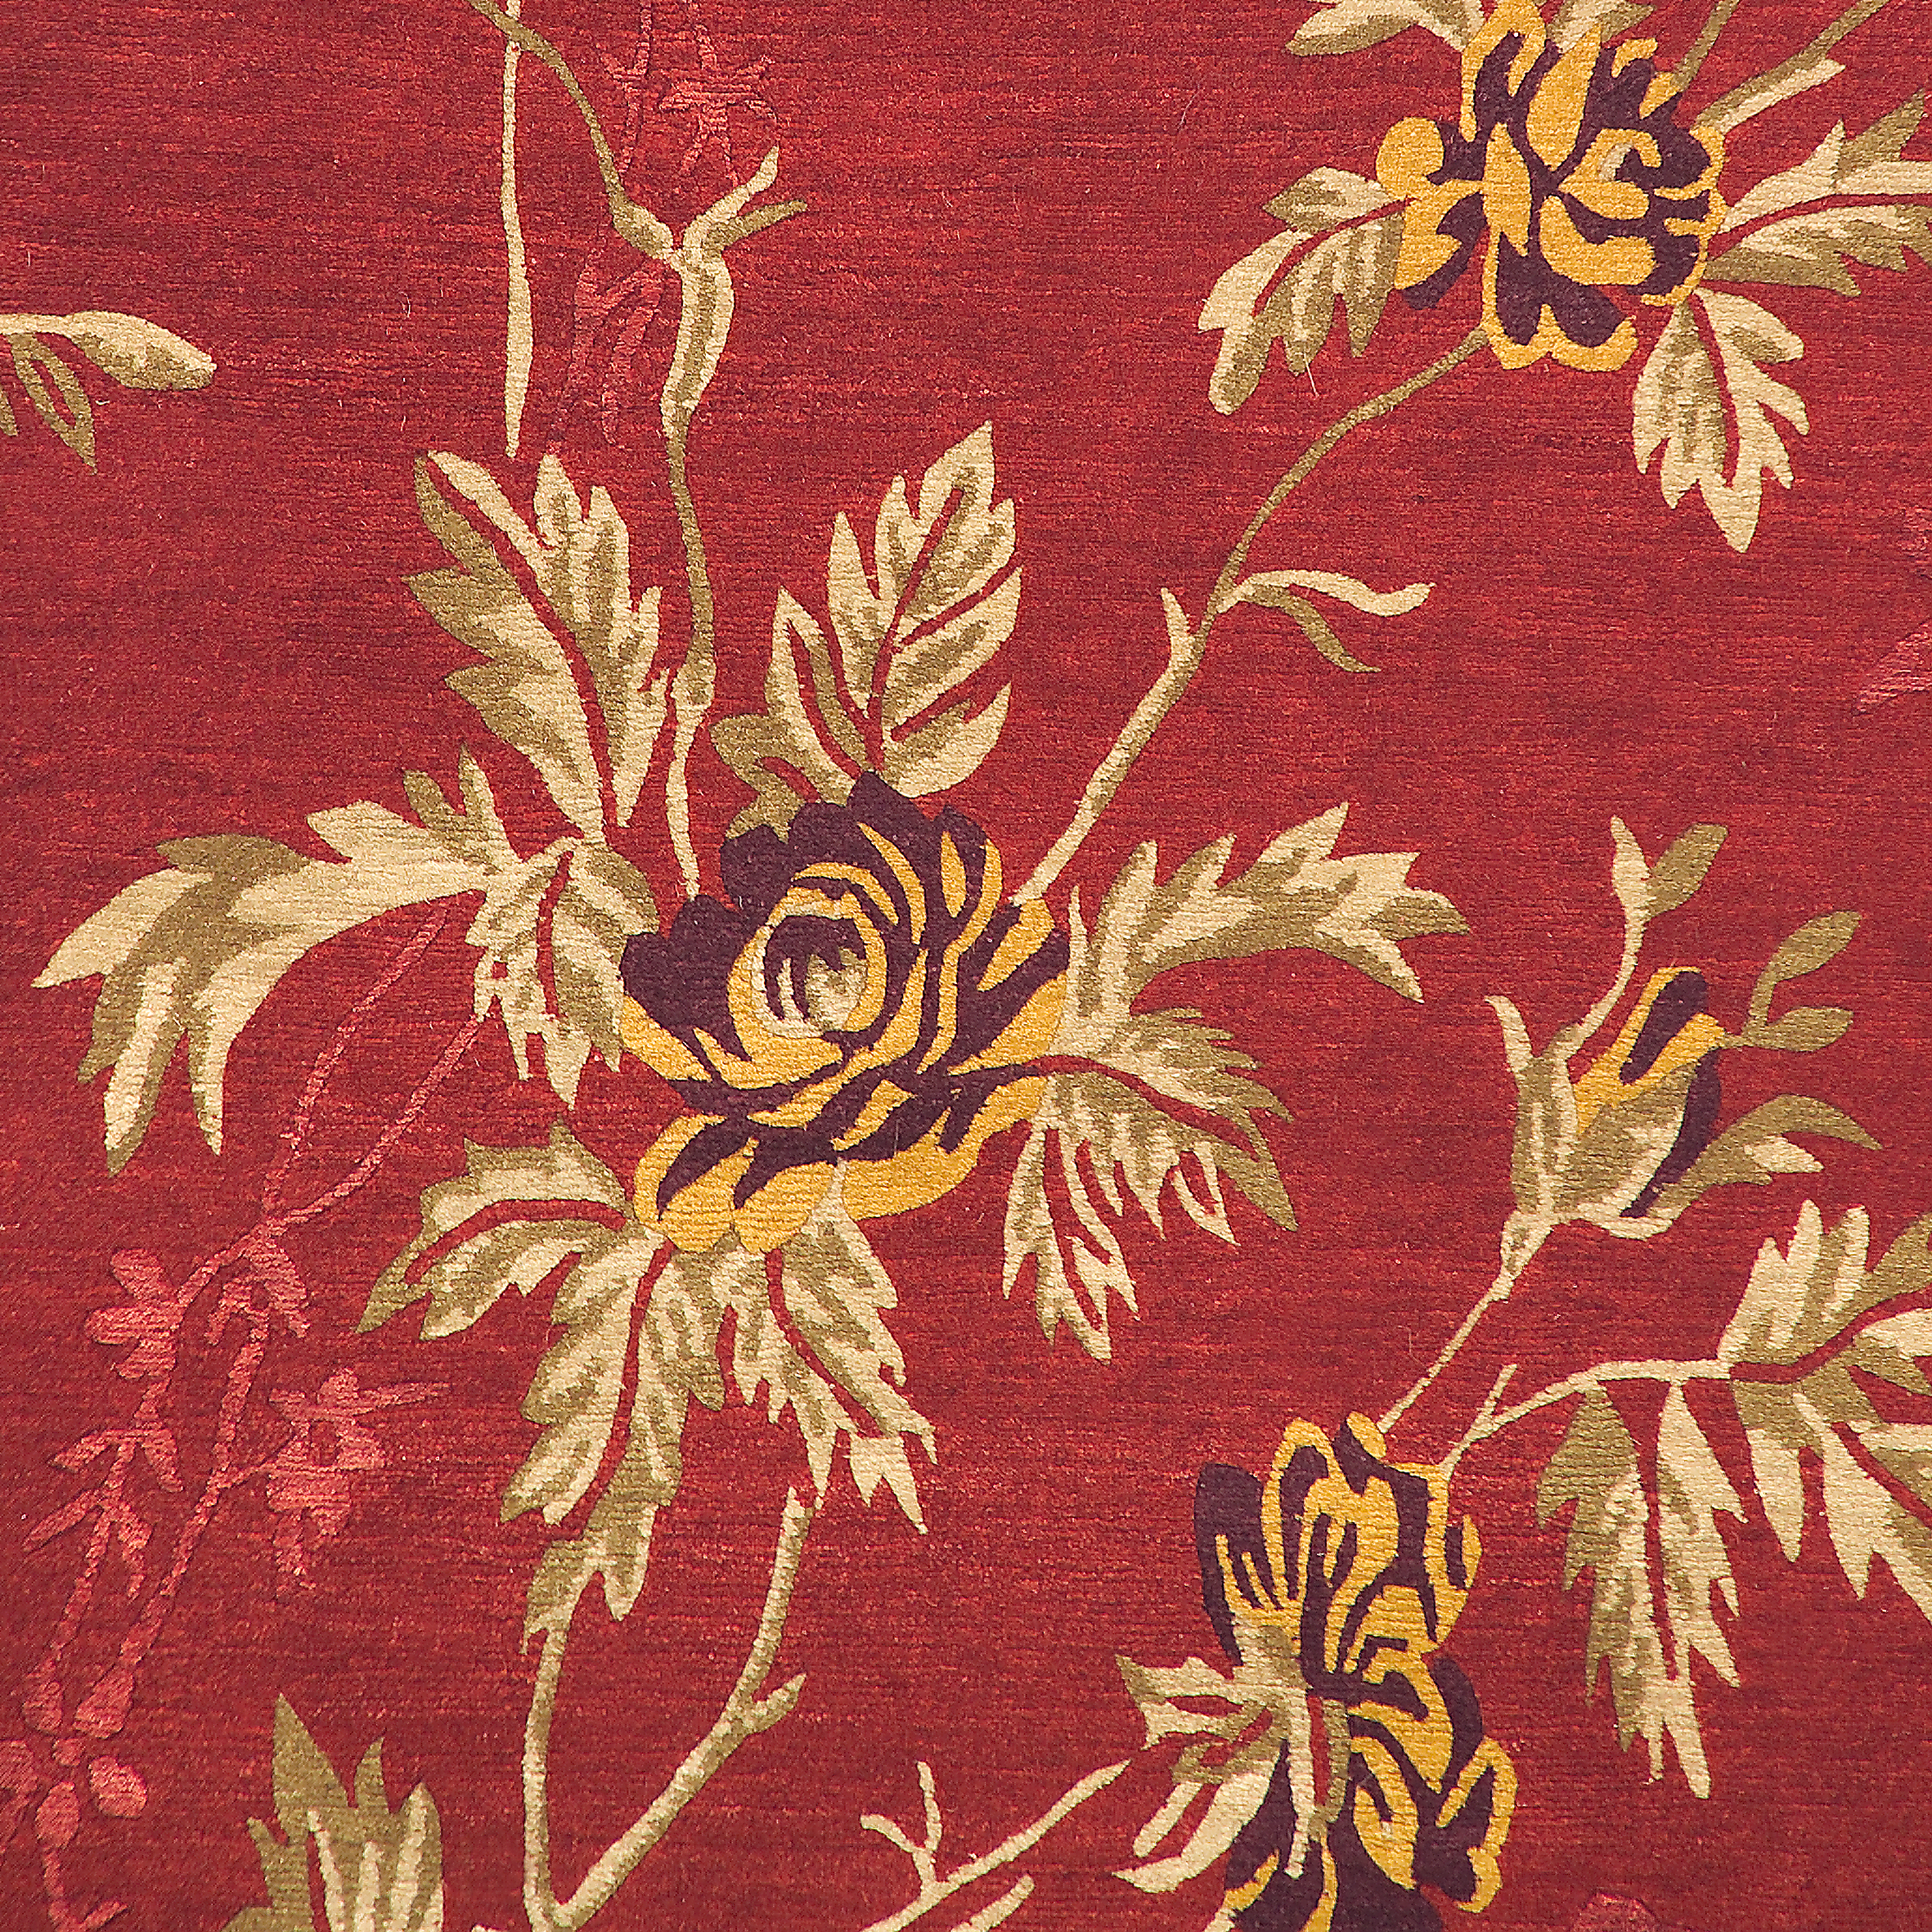 Geba Teppich "Rubin" in rot mit strauchartigem floralem Muster, aus Nepal, 100 Knoten, gefertigt aus 85% tibetische Hochlandschafwolle und 15% chinesischer Seide - Produktbild - Geba Teppich